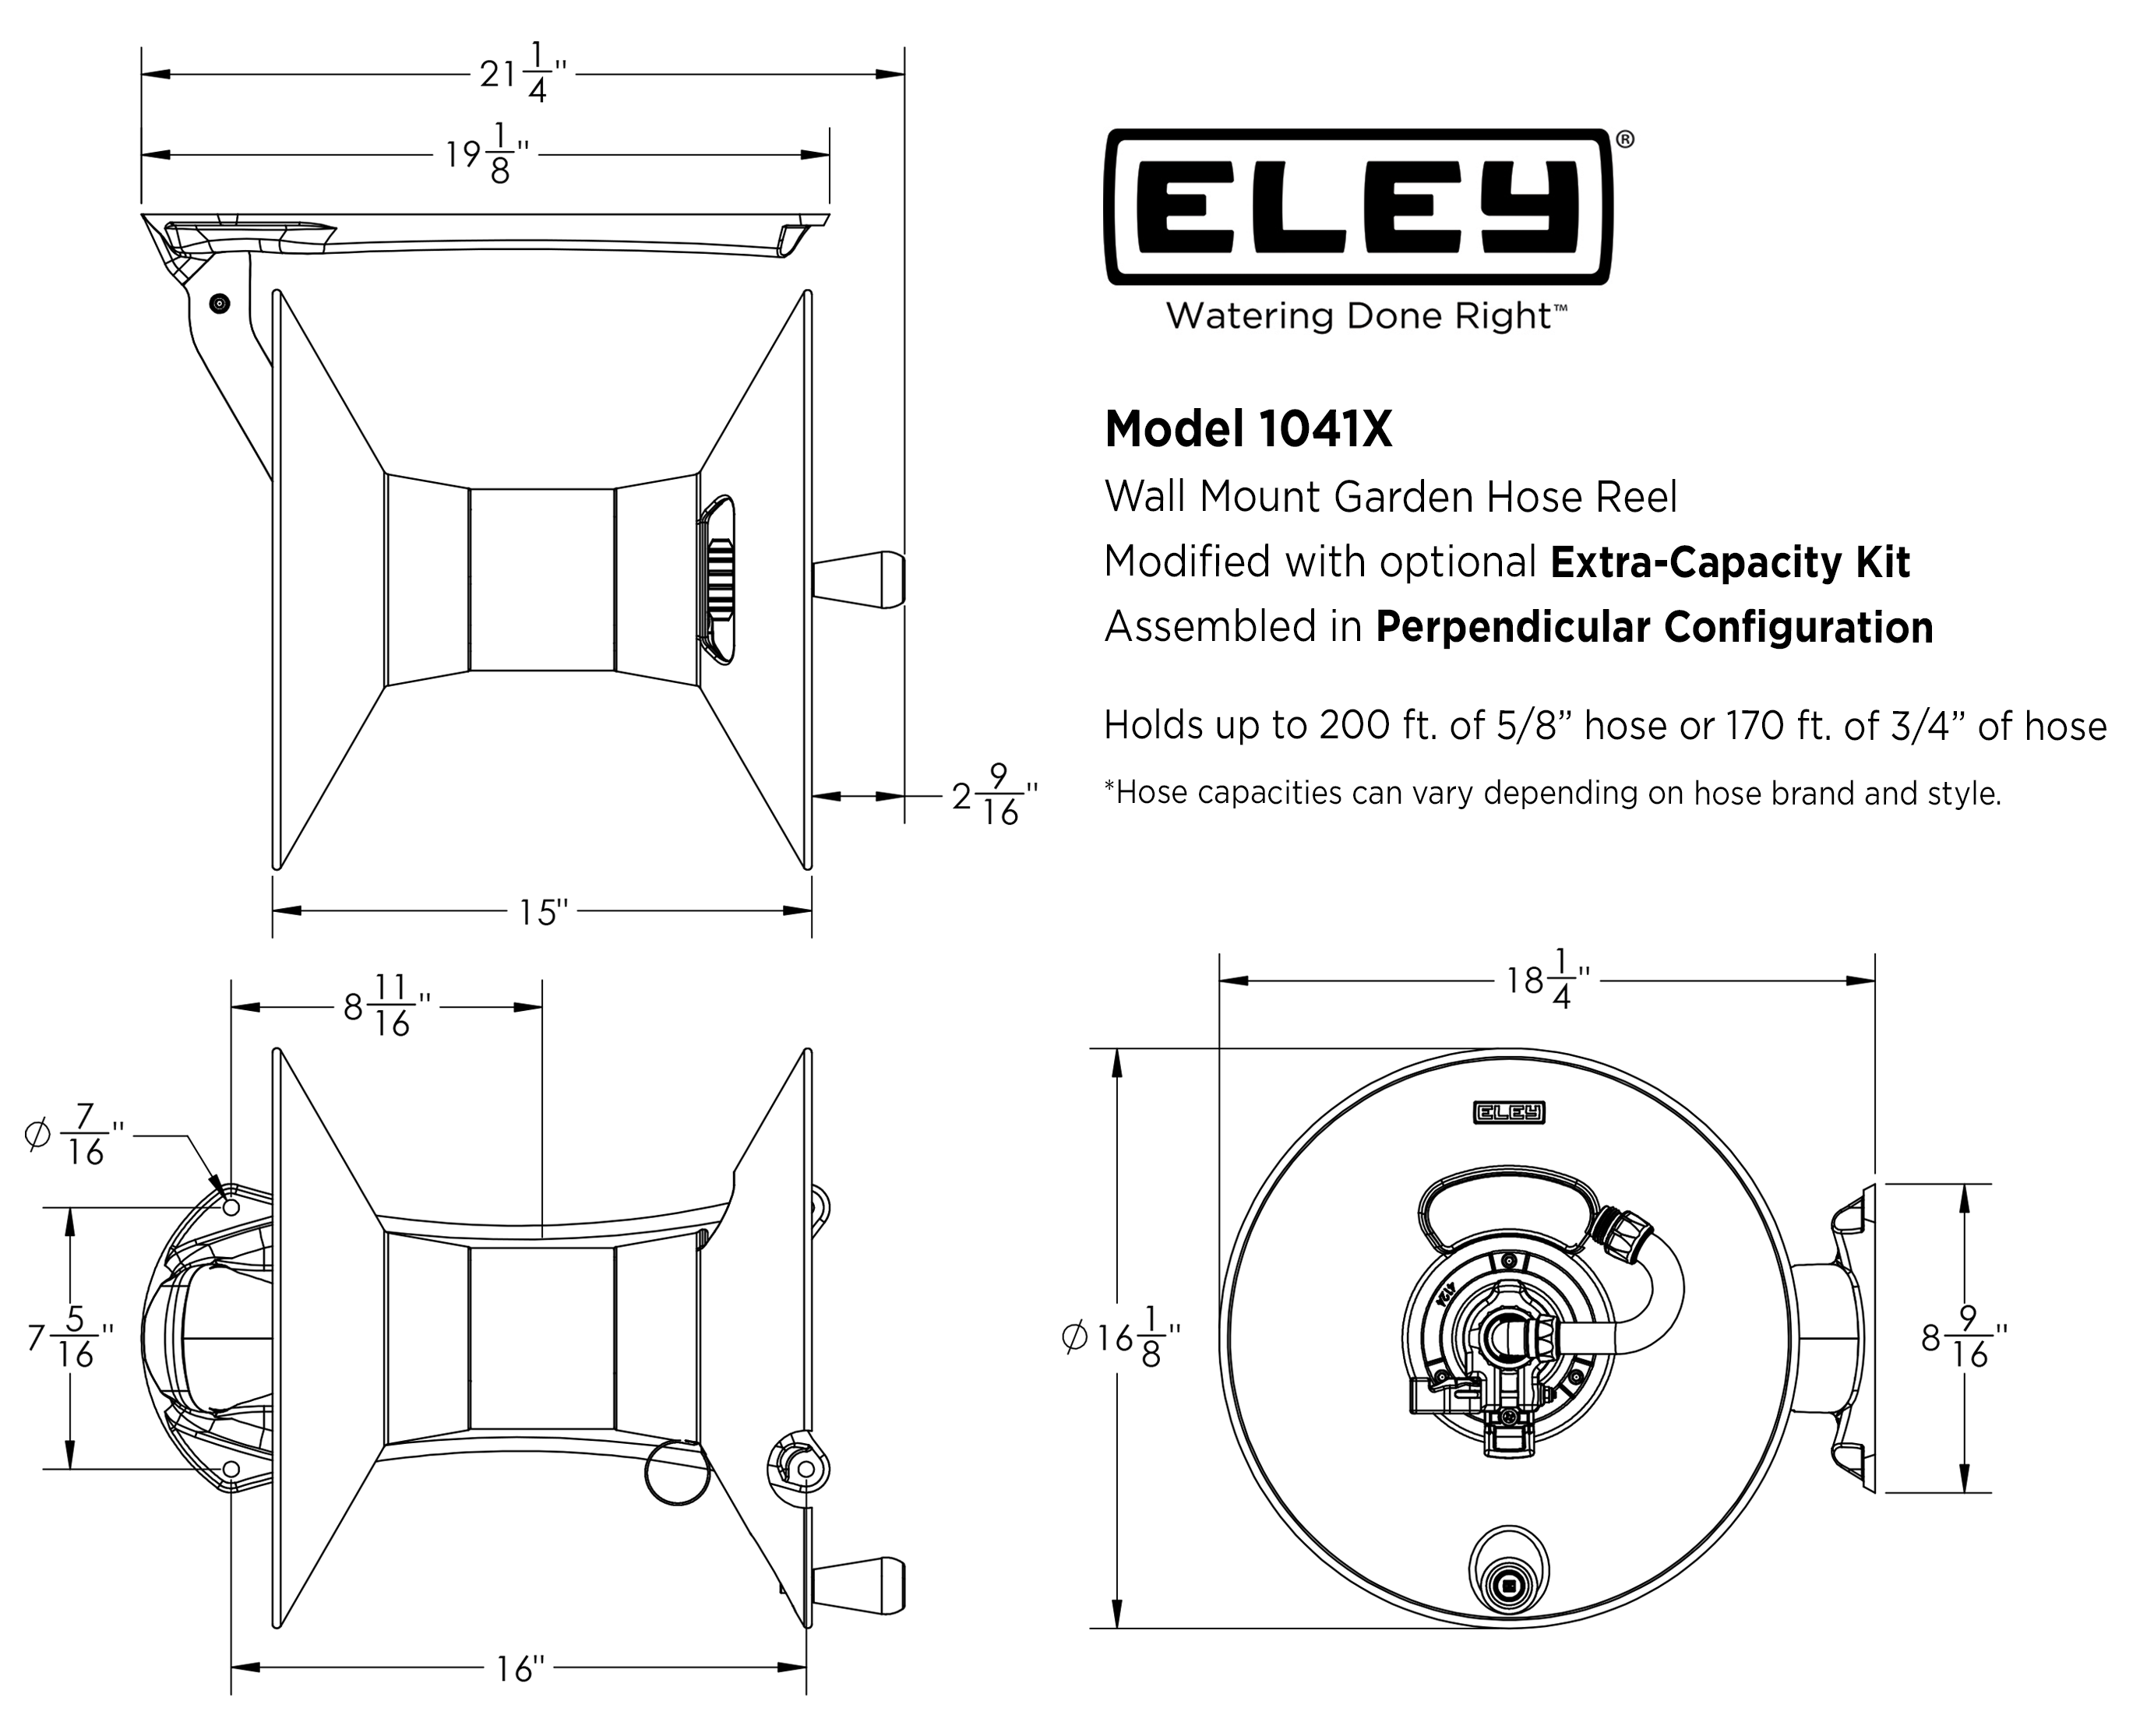 ELEY Model 1041X wall mount garden hose reel dimensions